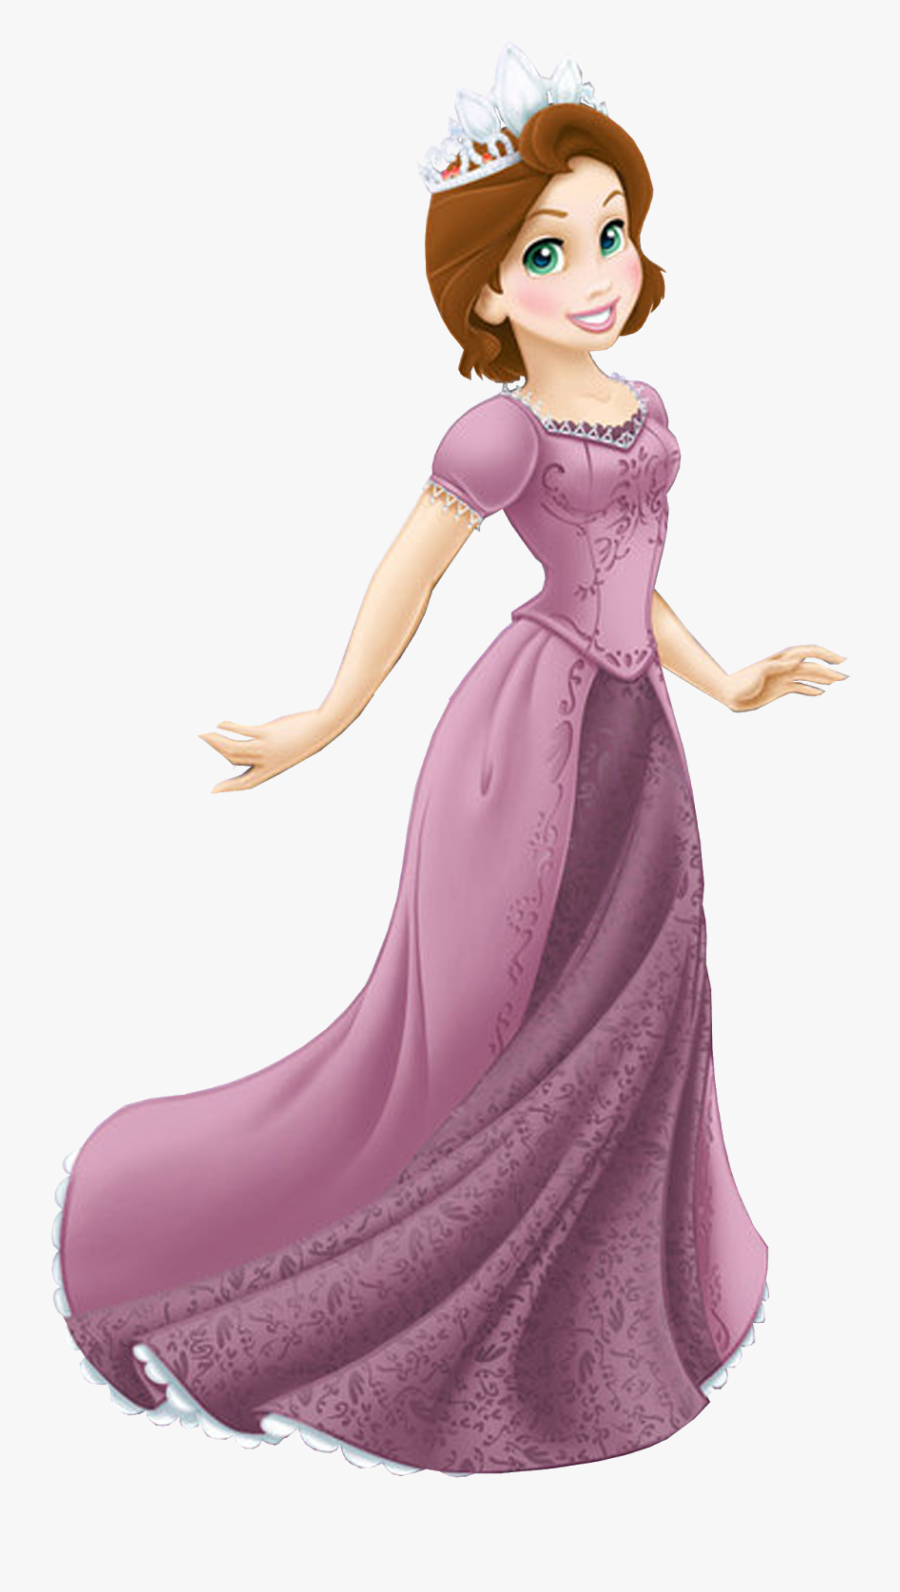 Rapunzel Clipart - Disney Princess Rapunzel Clipart, Transparent Clipart